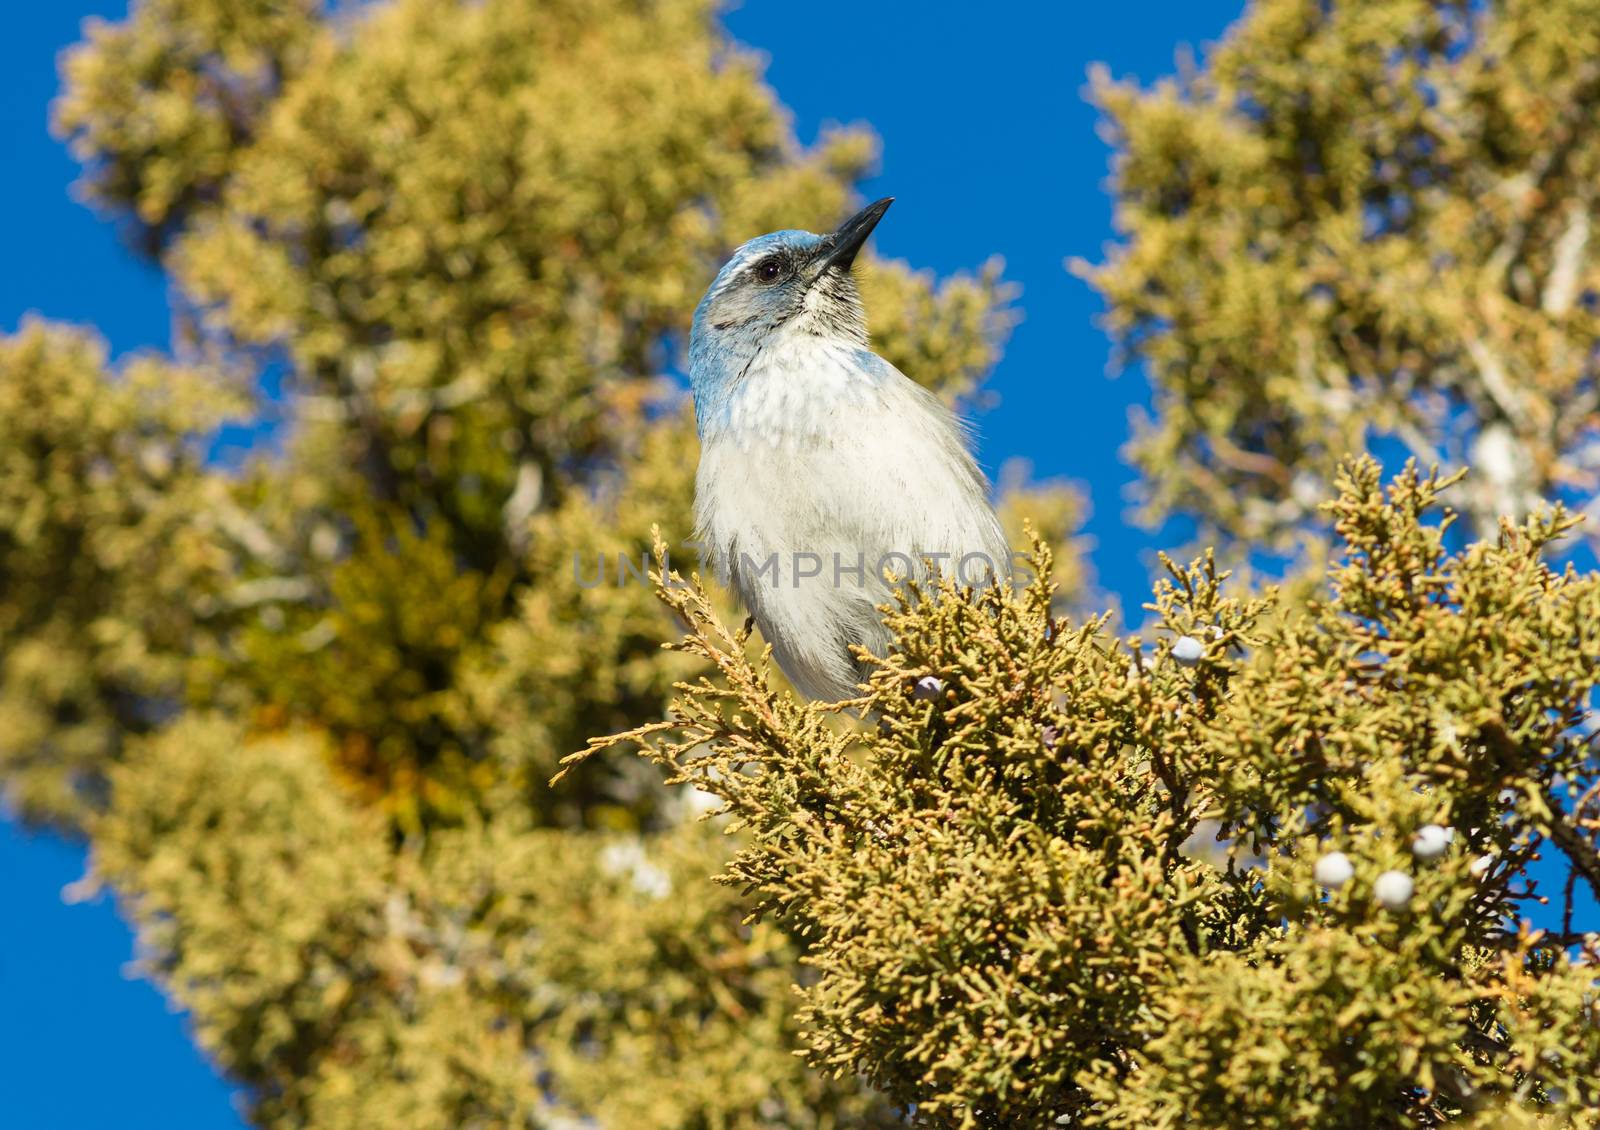 Scrub Jay Blue Bird Great Basin Region Animal Wildlife by ChrisBoswell